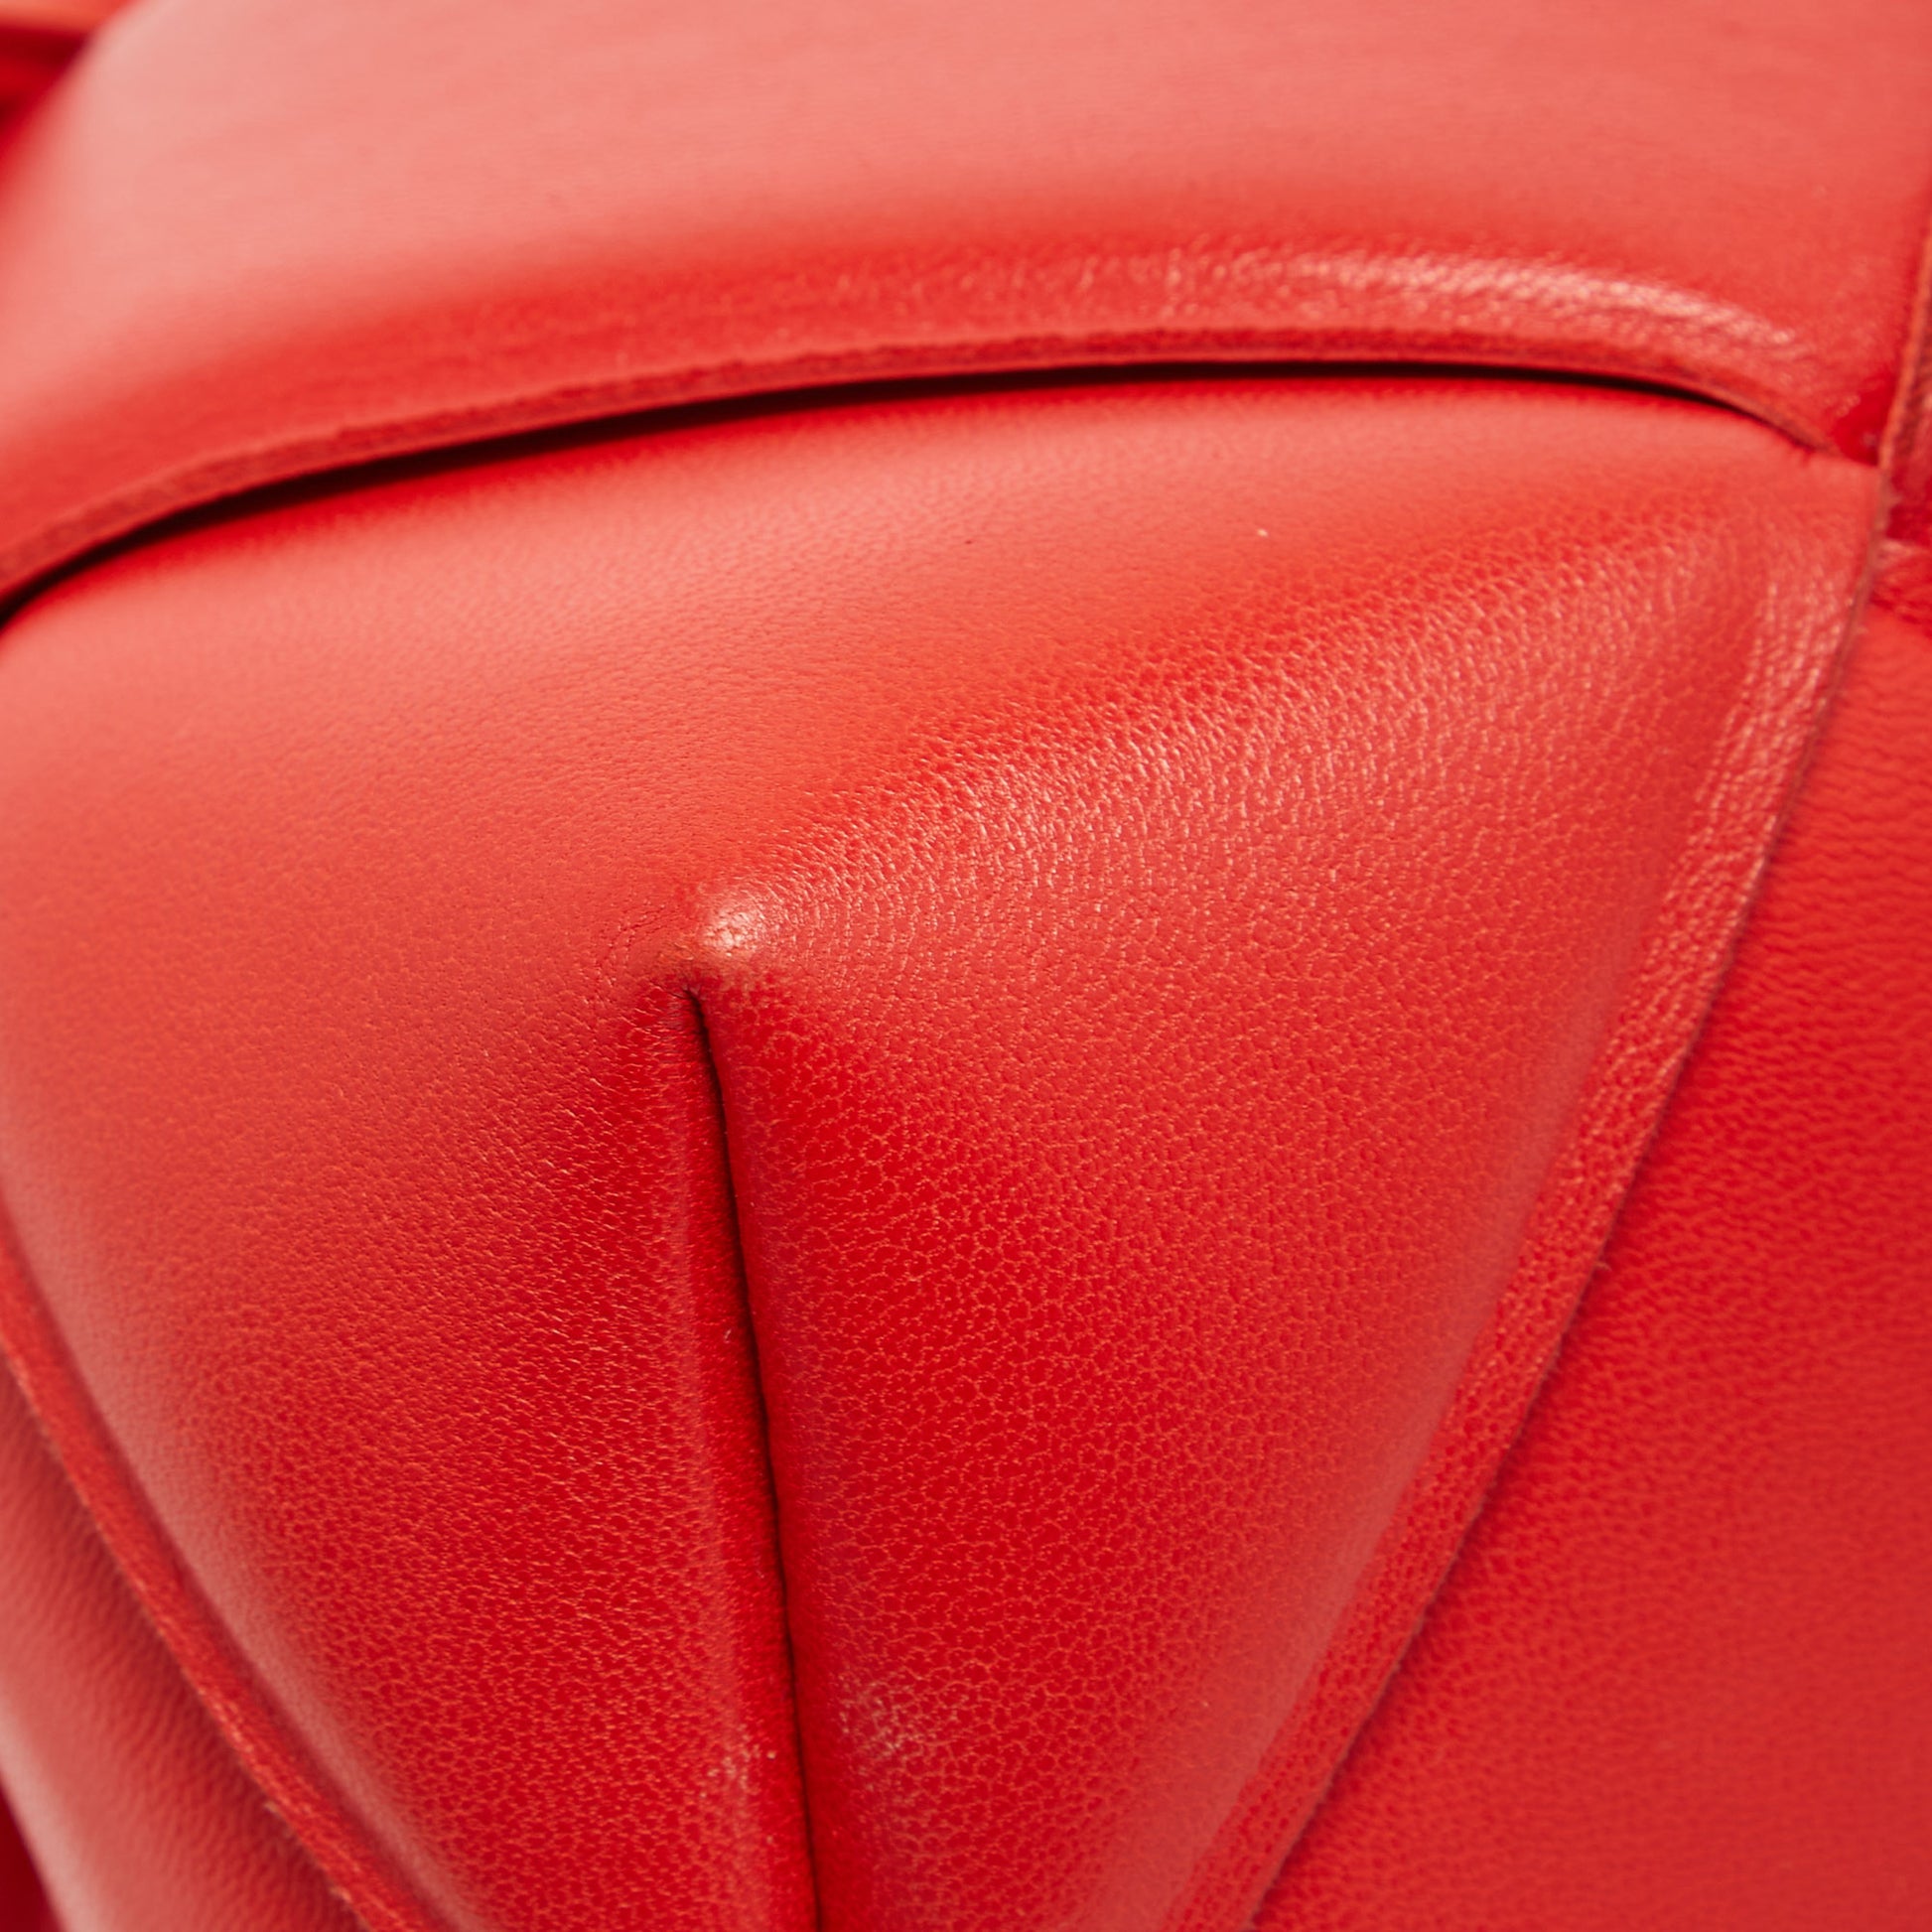 Bottega Veneta Shiny Leather Padded Vest Oxblood Red - ShopStyle